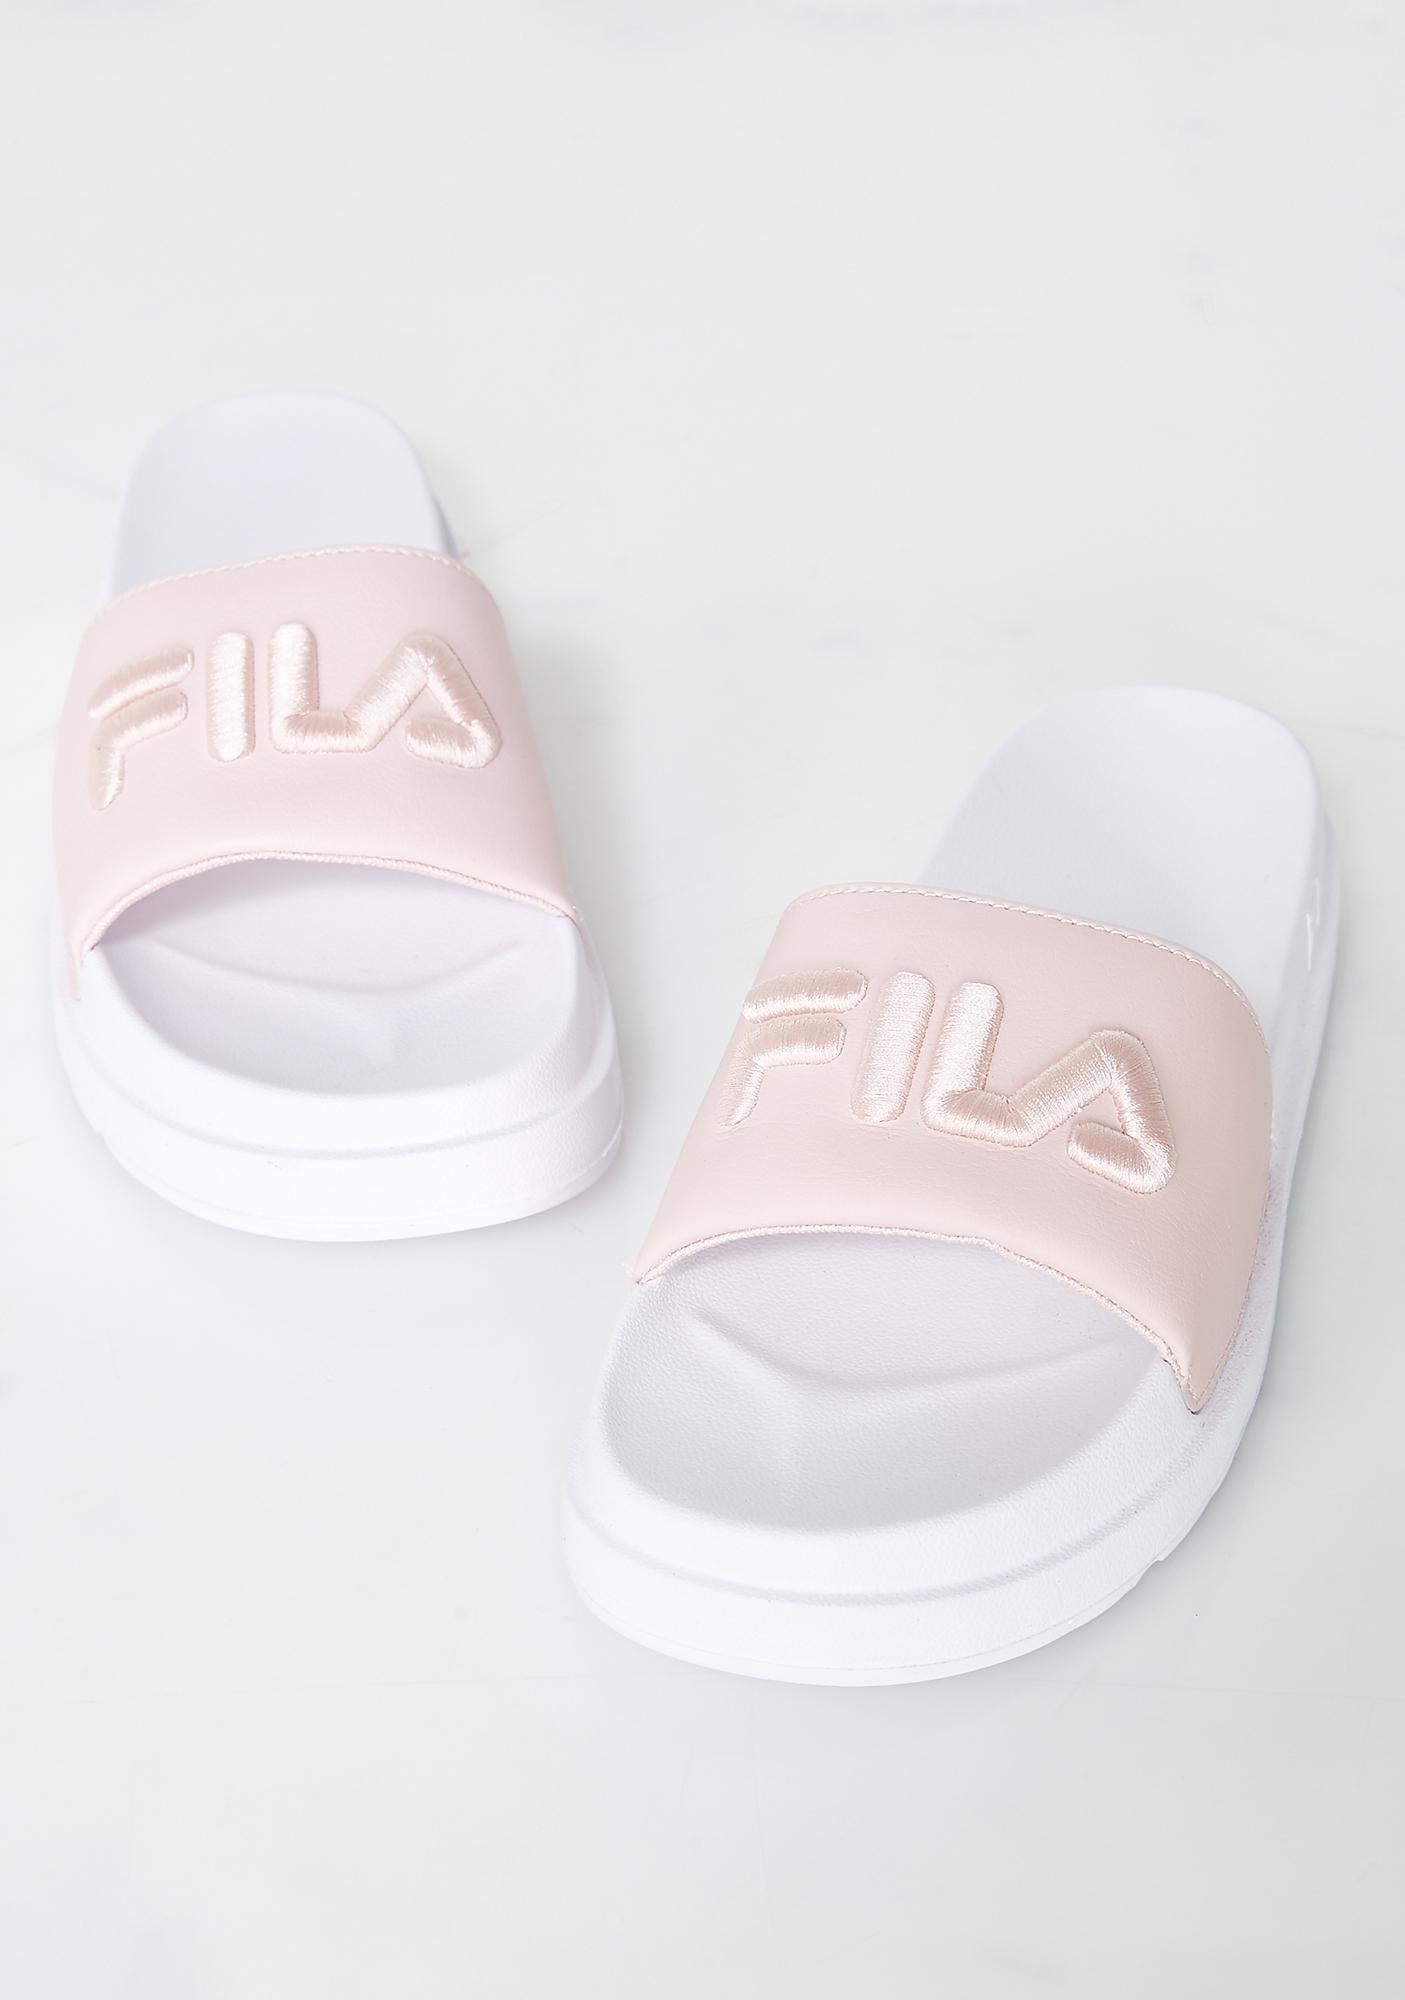 fila pink slides